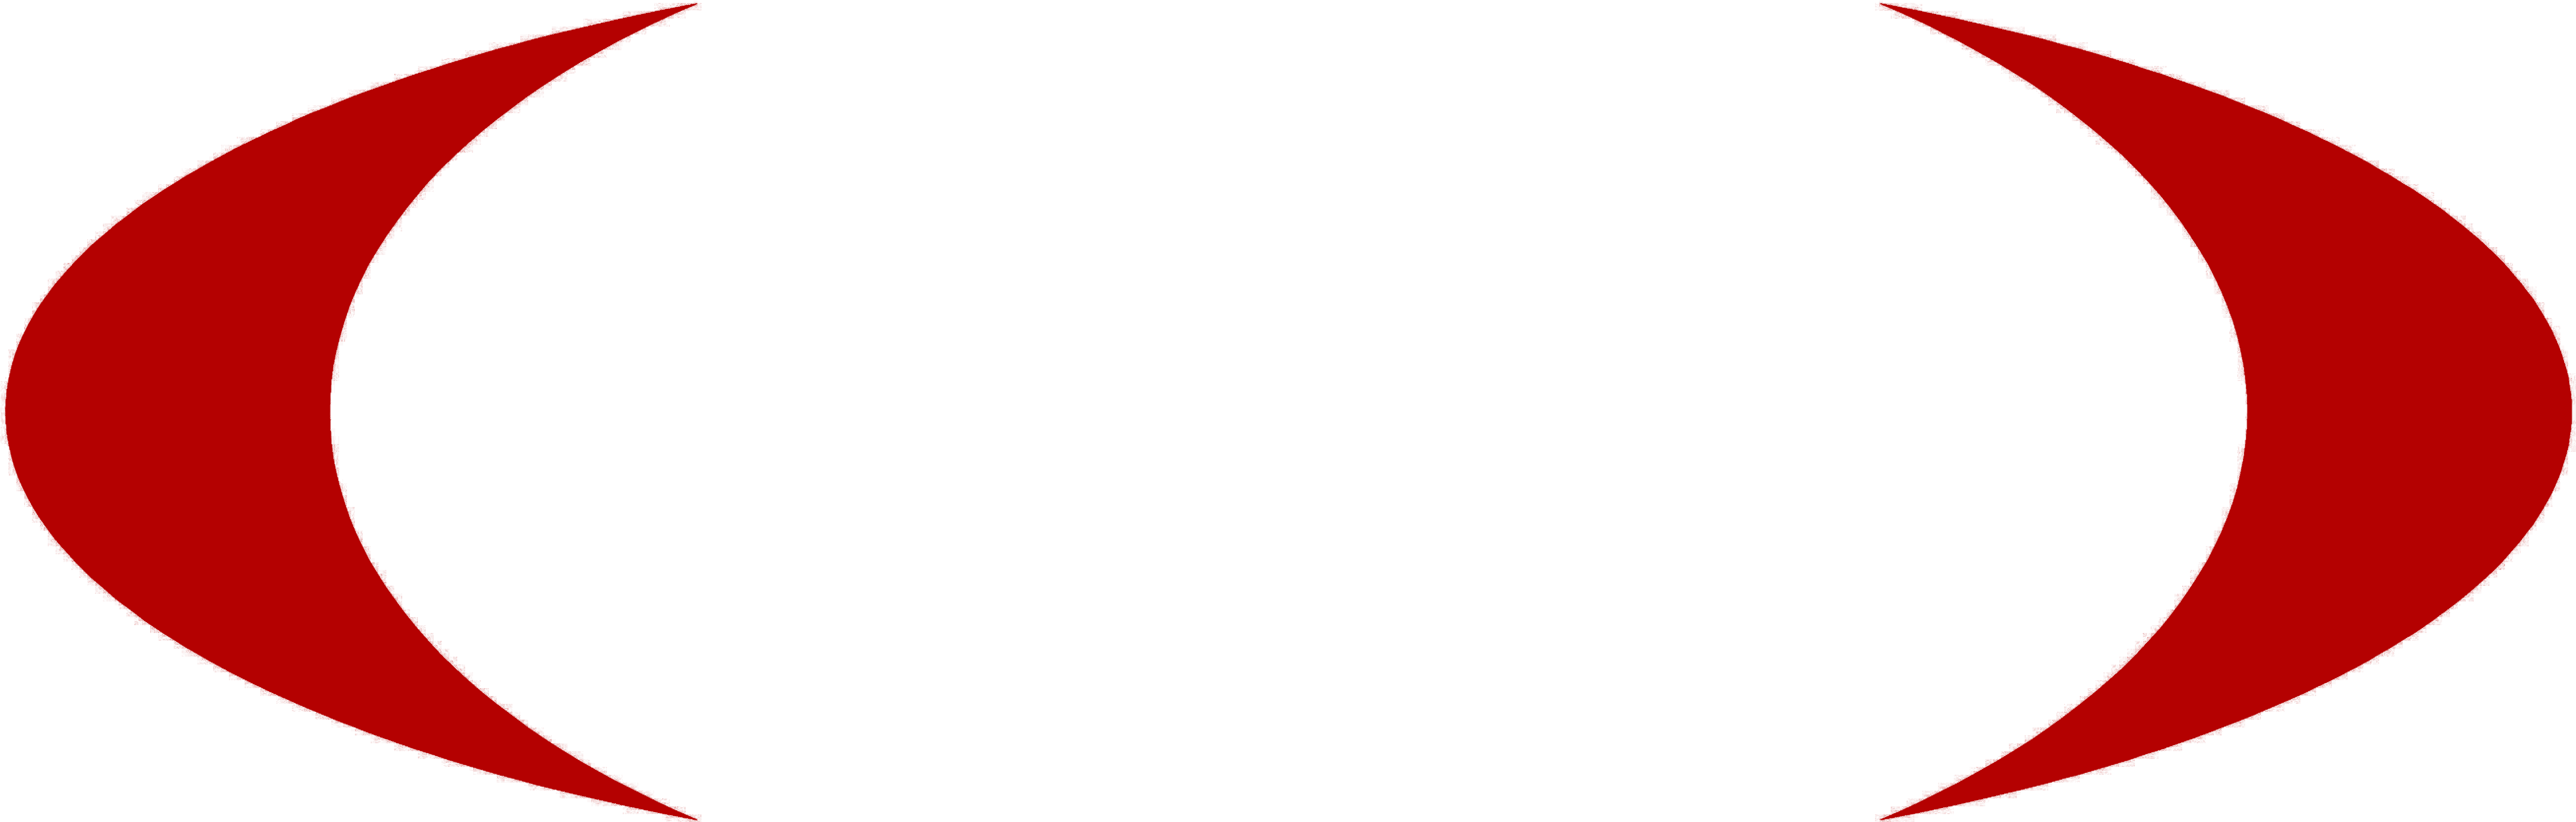 Real Estate Video Blog - Real Estate Video Blog (6000x2460)